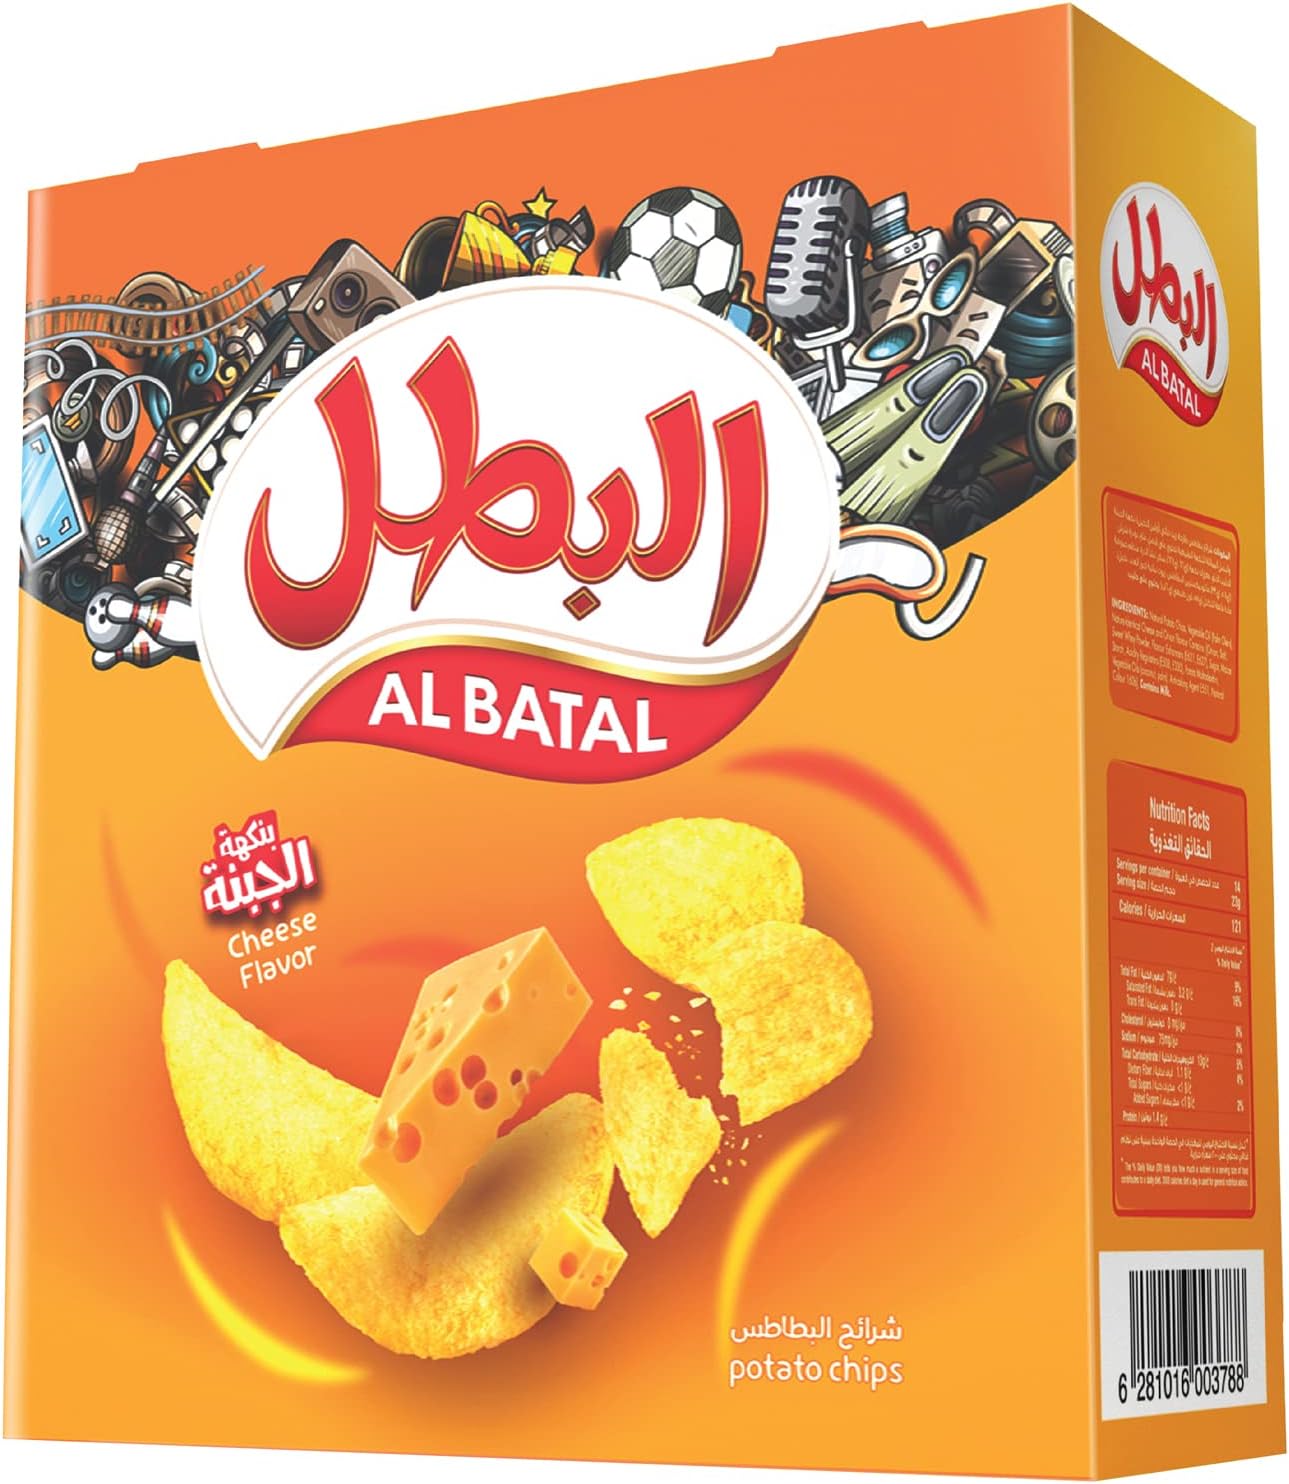 Al Batal Cheese Flavor Potato Chips, 12 x 23 g